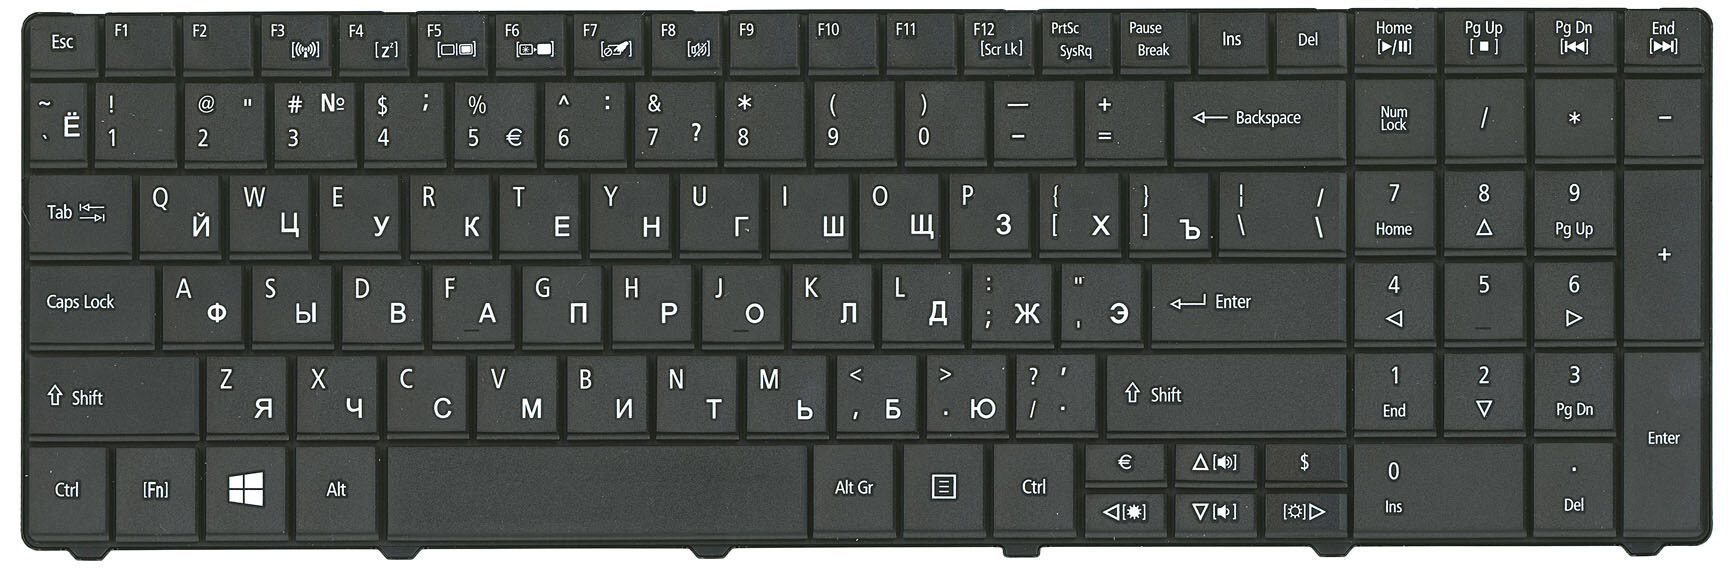 Клавиатура Для Ноутбука Купить В Тольятти